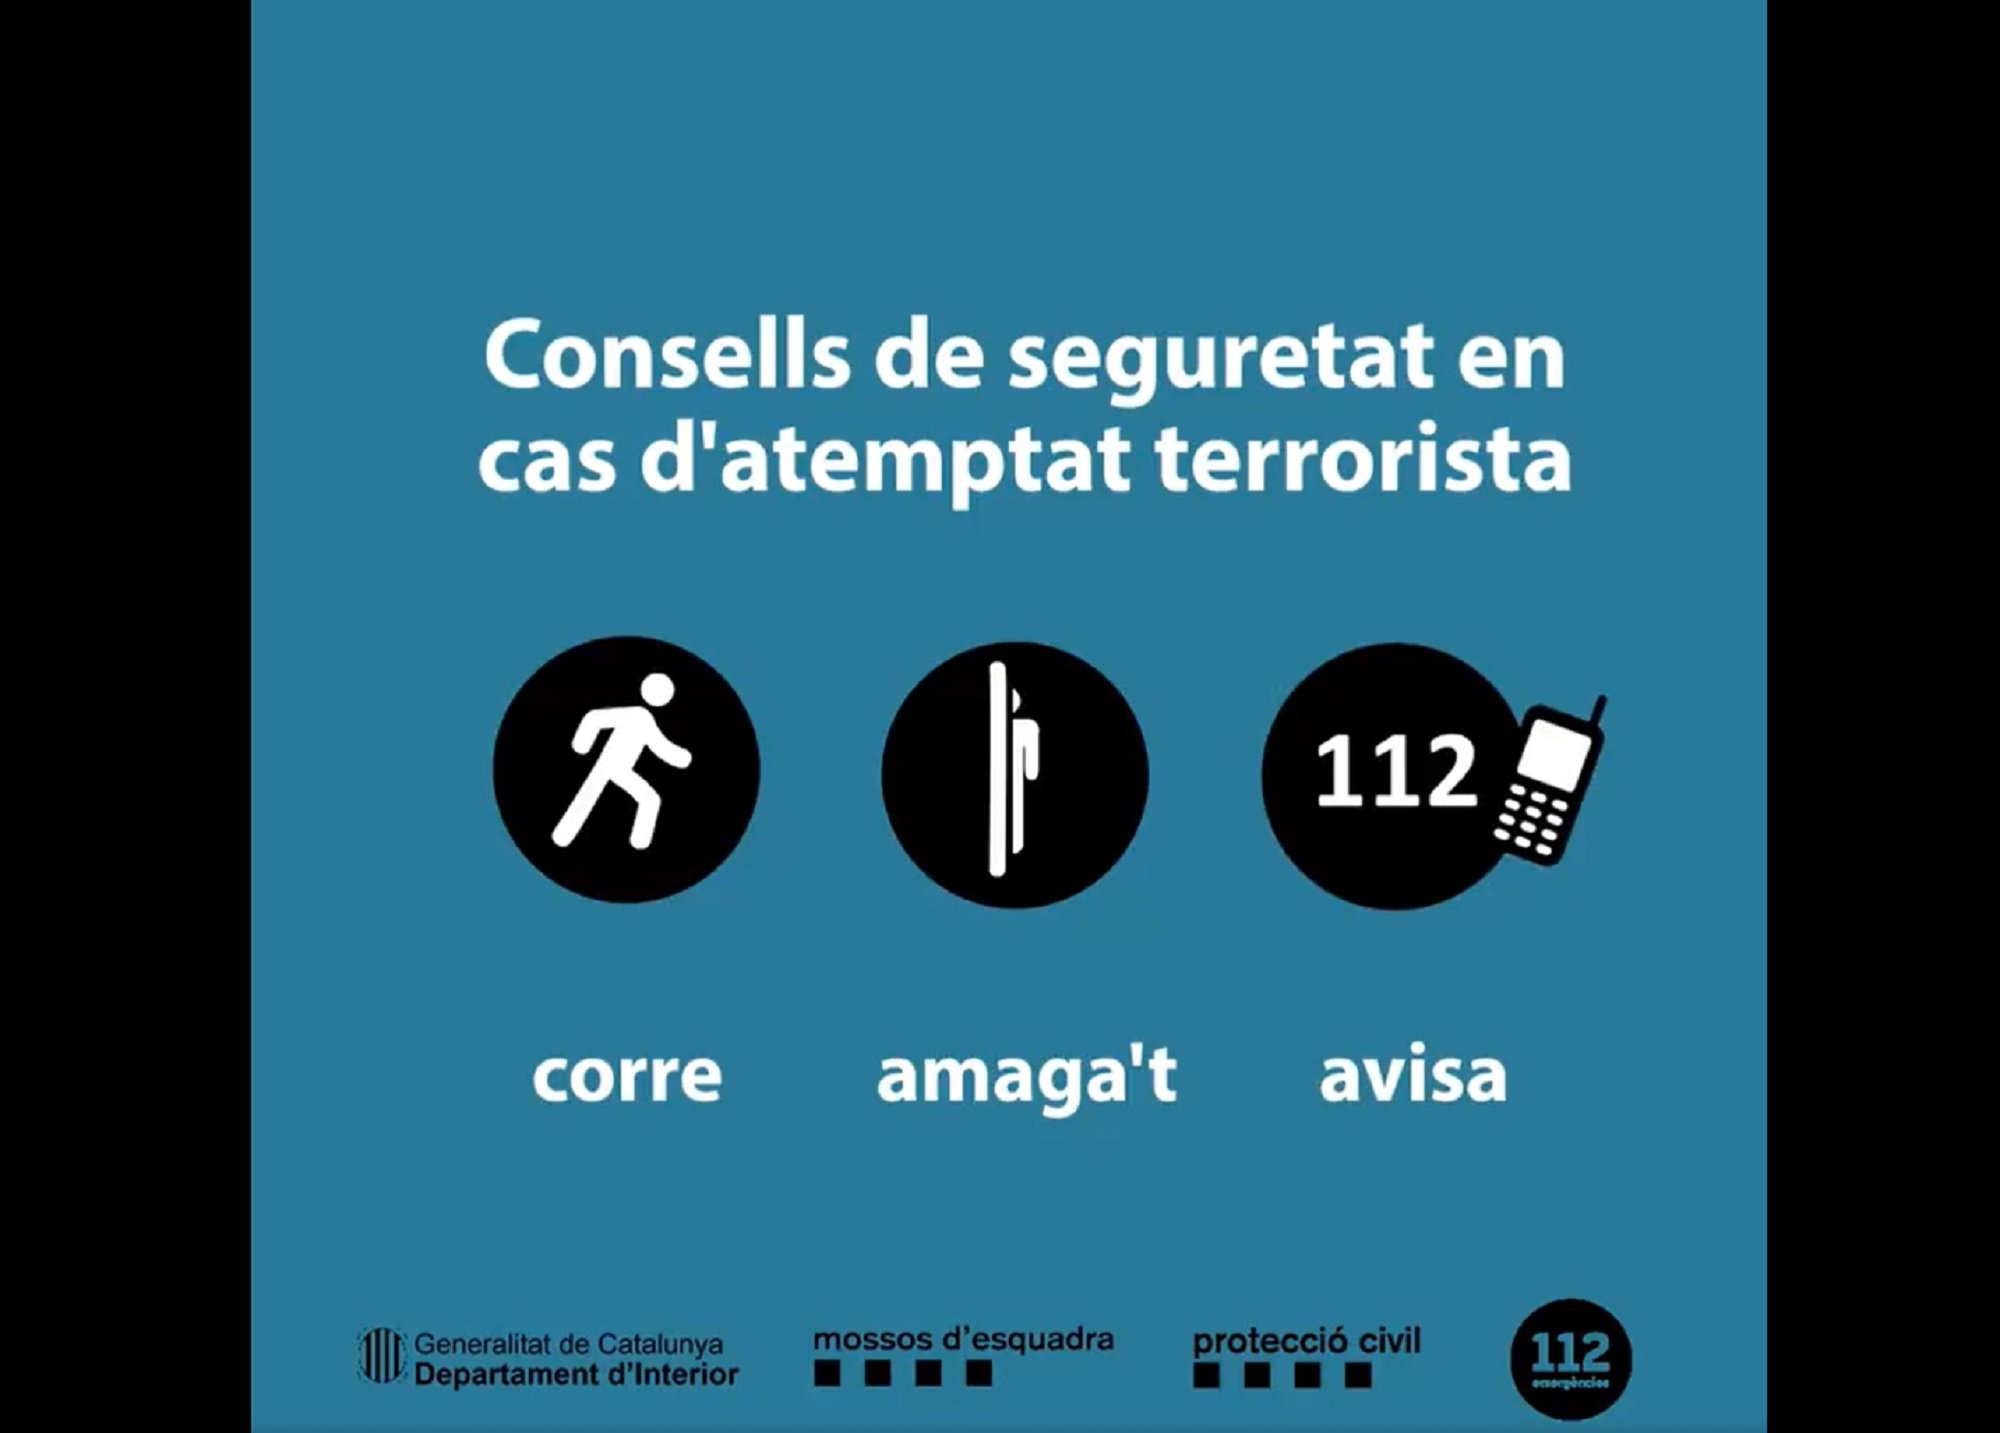 El Mossos adverteixen en cas d'atemptat terrorista: "Corre, amaga't i avisa"